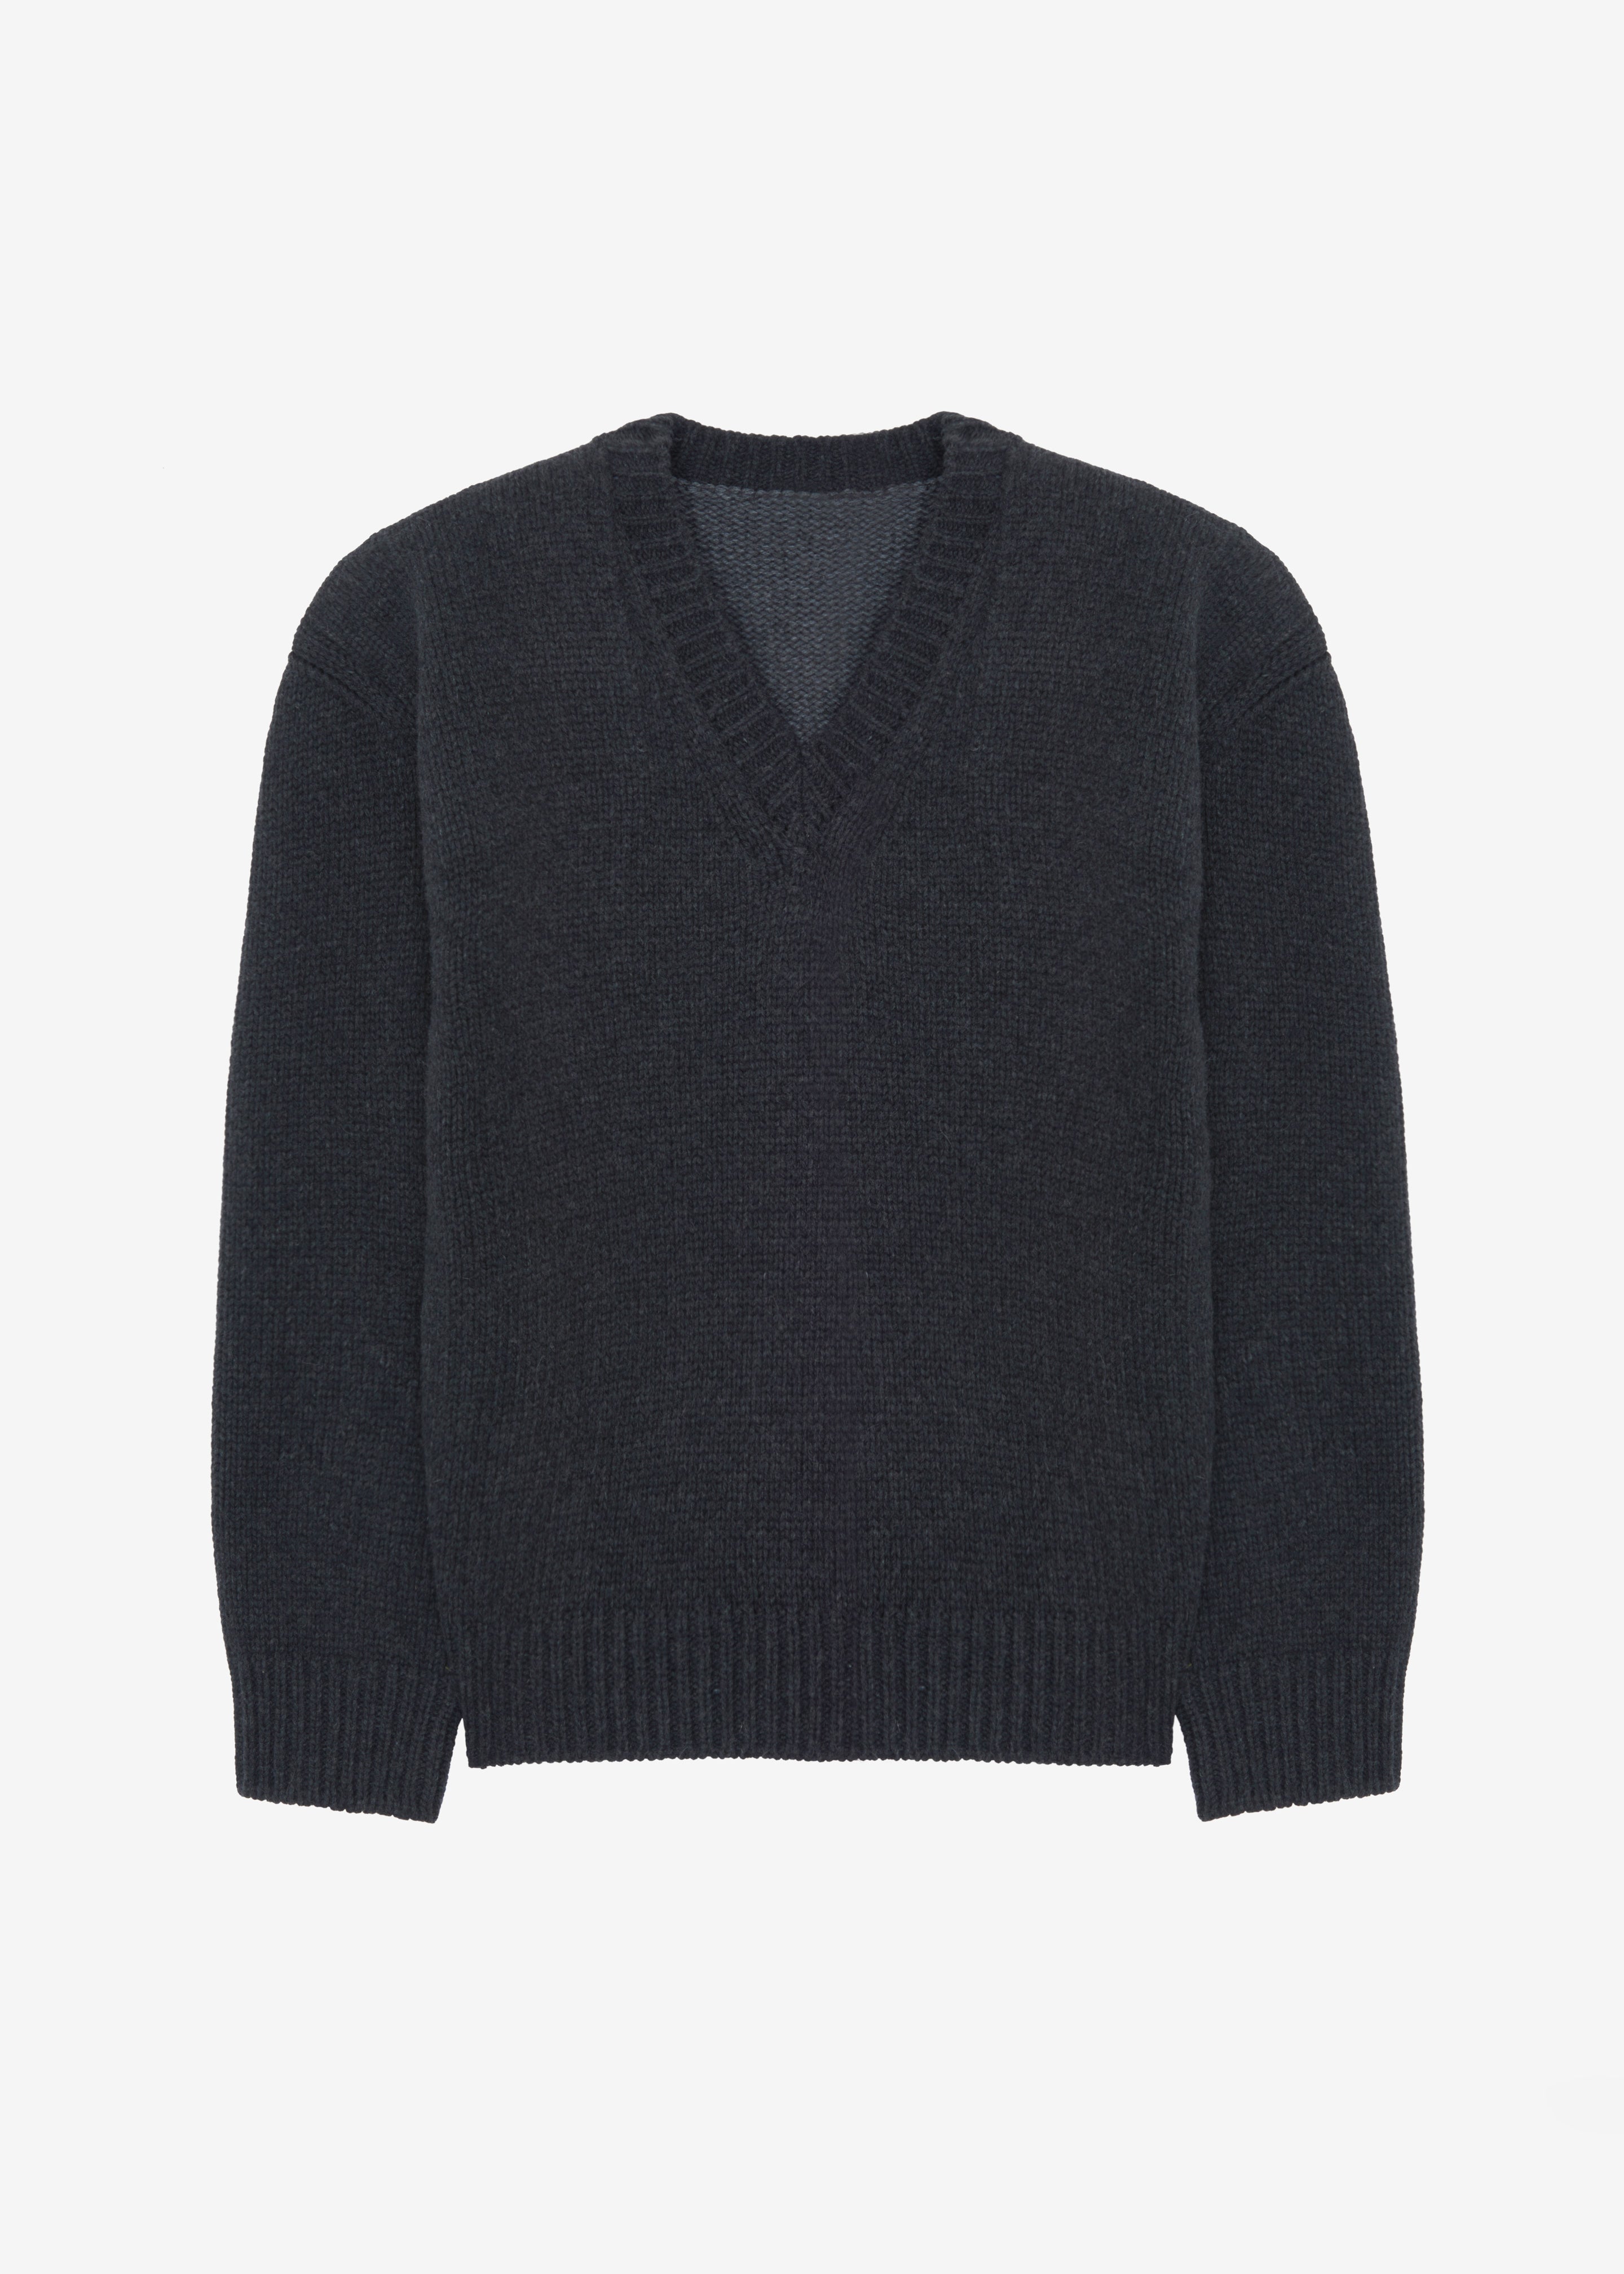 Edina Two Tone Wool Sweater - Charcoal - 11